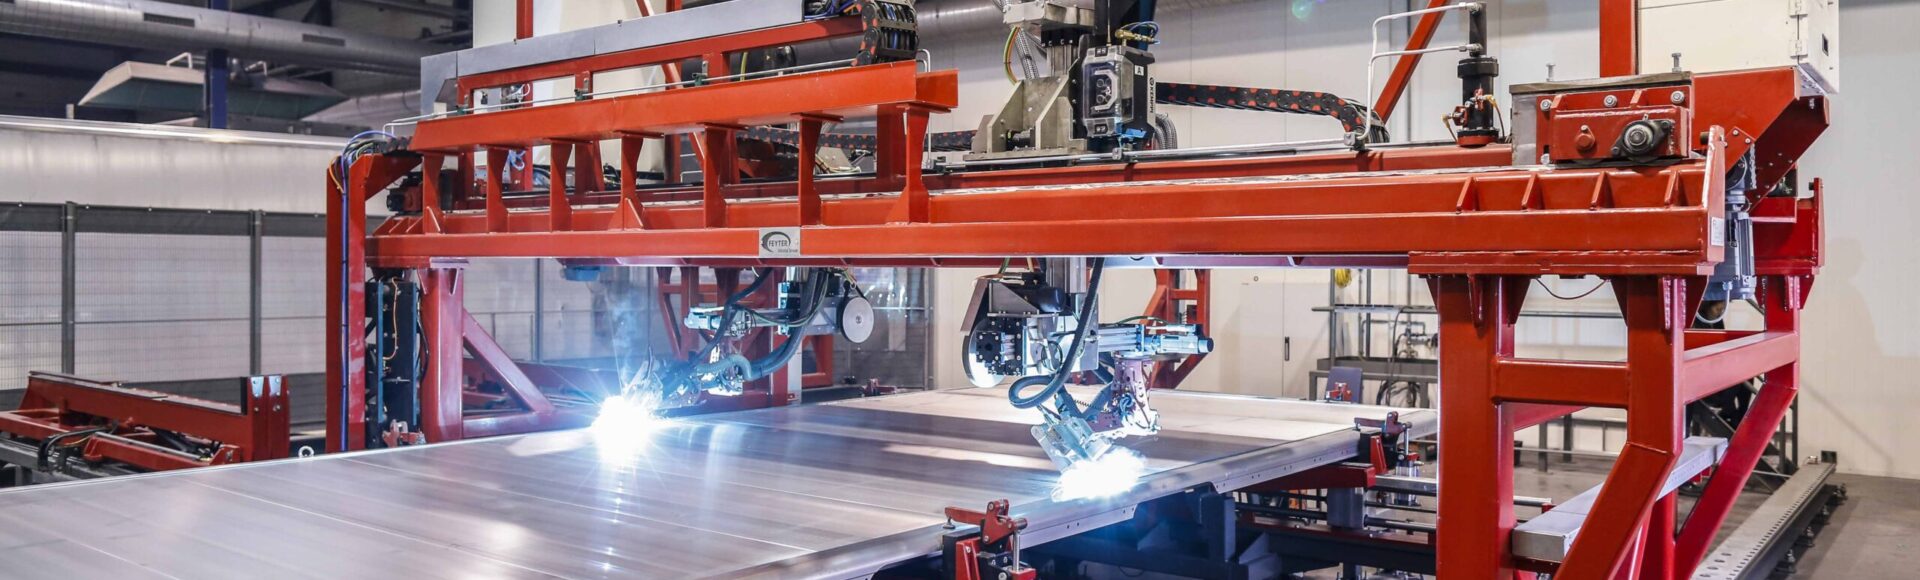 foto lasrobot machinebouw feyter industrial